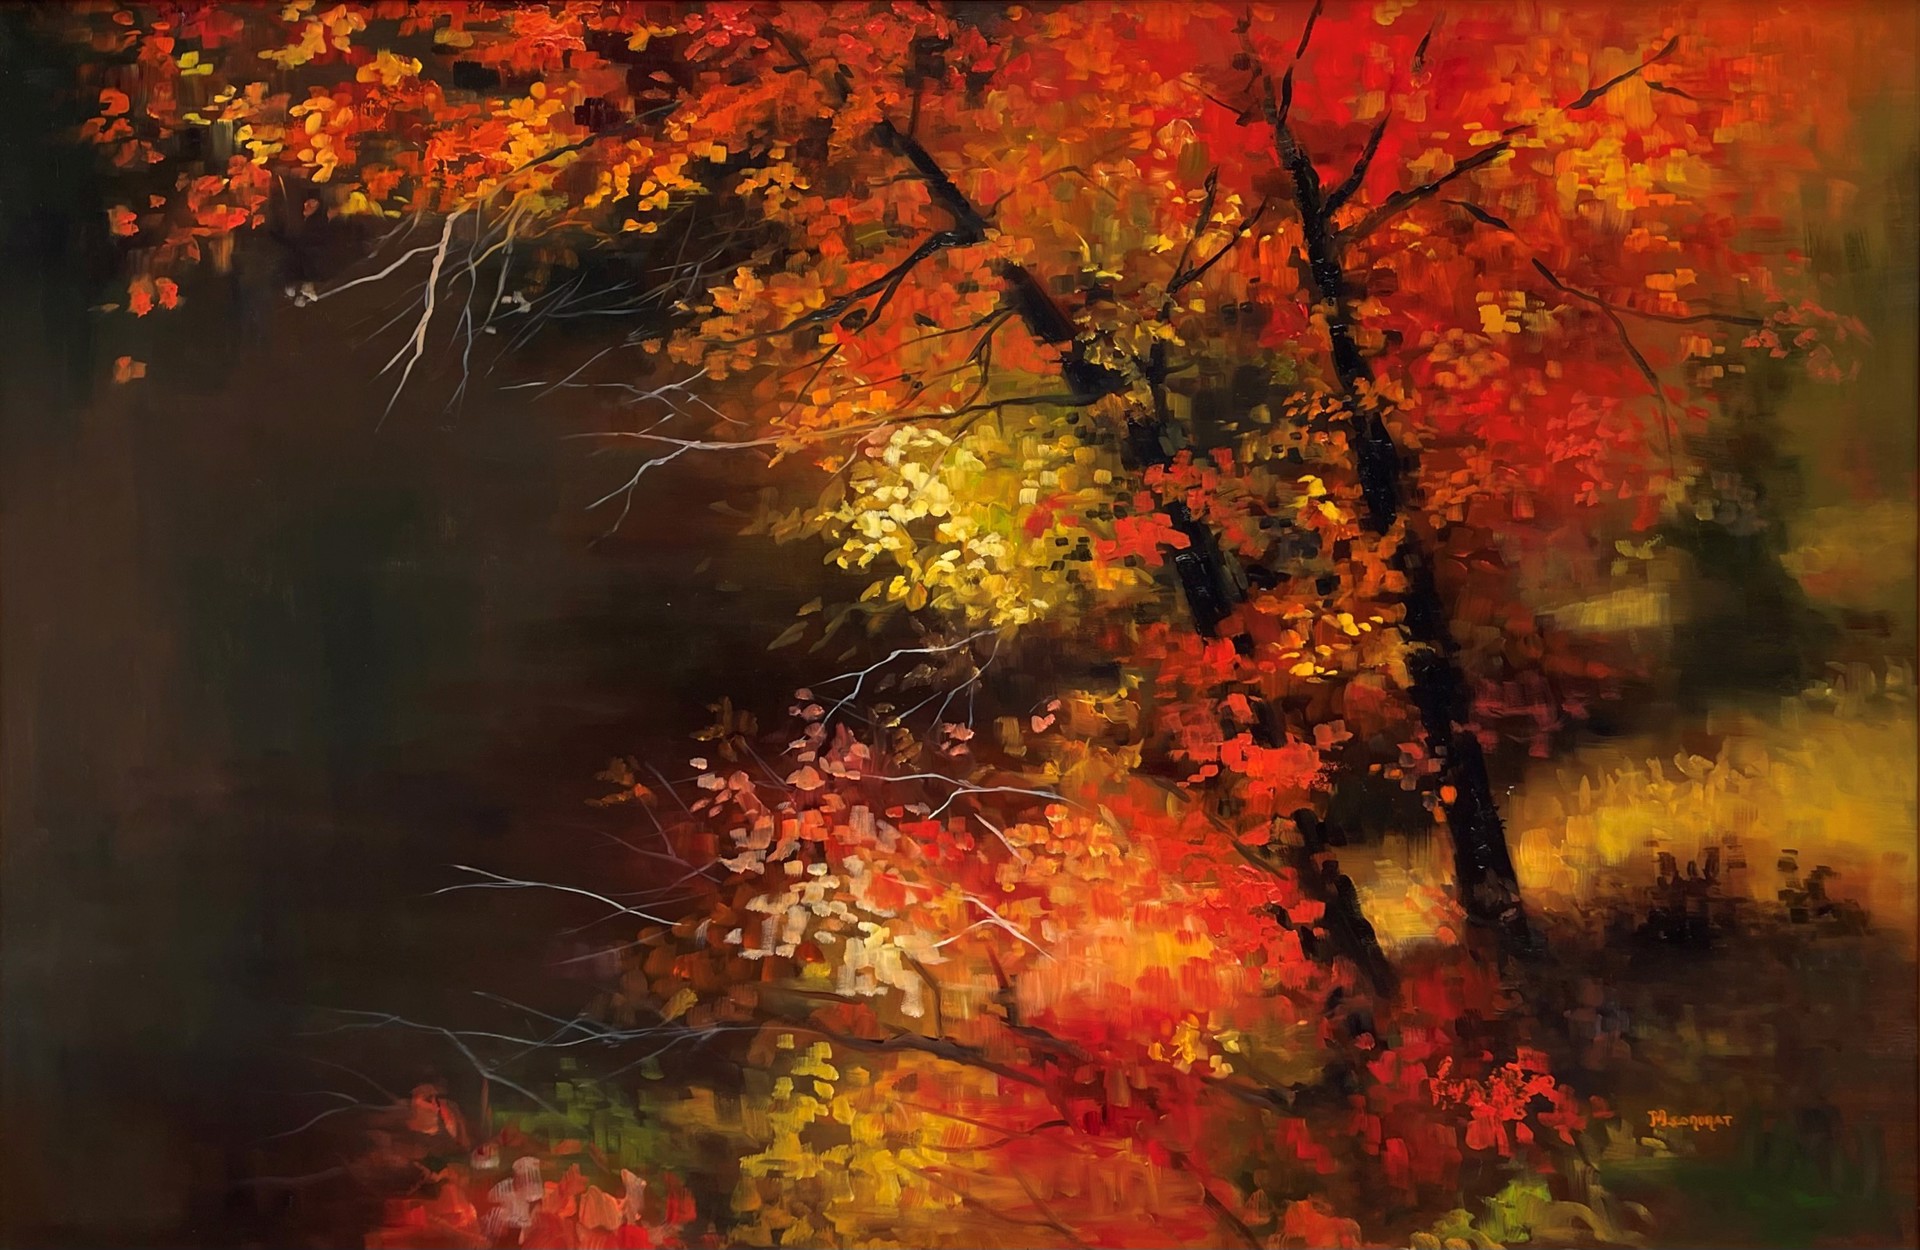 Autumn Flare by Michelle Condrat